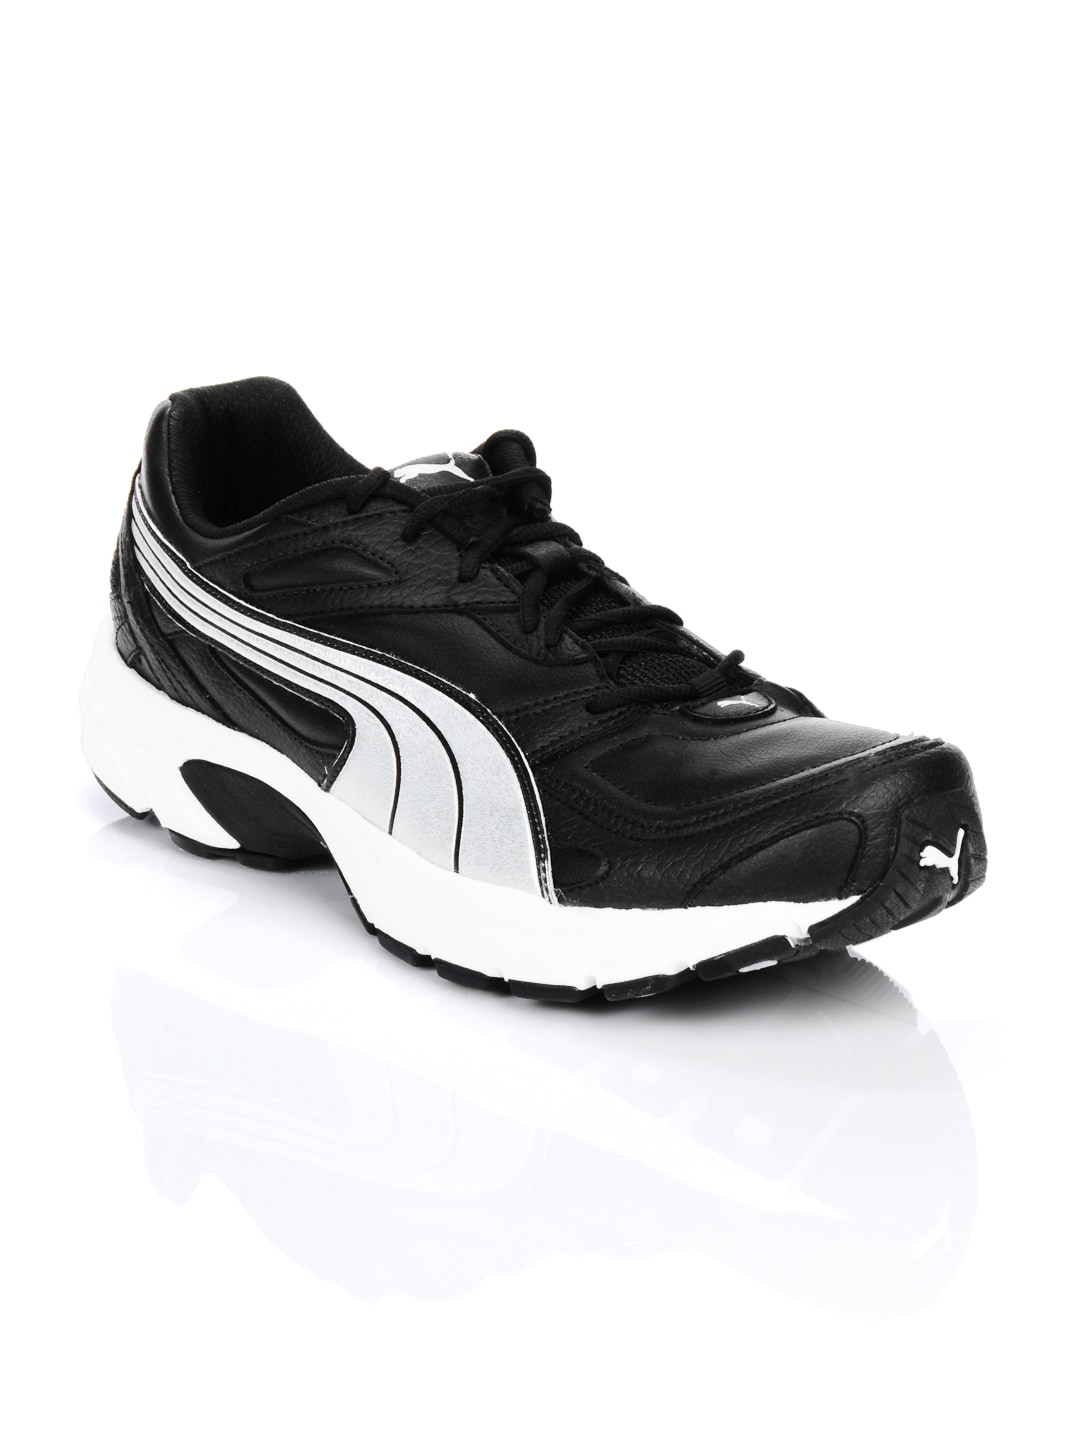 Puma Men Axis Black Sports Shoes